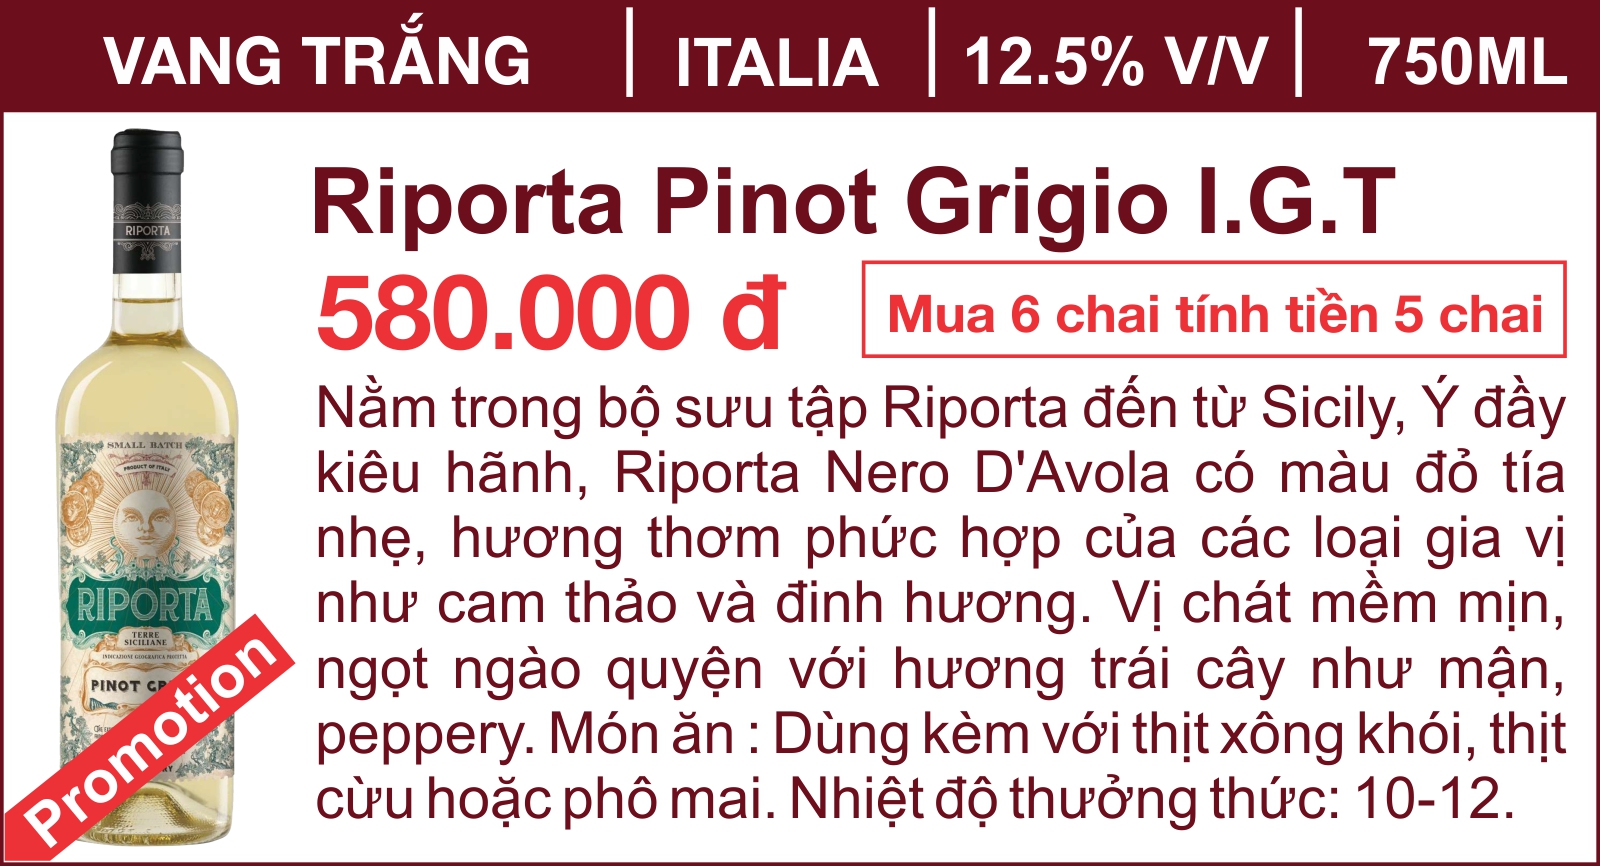 Riporta Pinot Grigio I.G.T